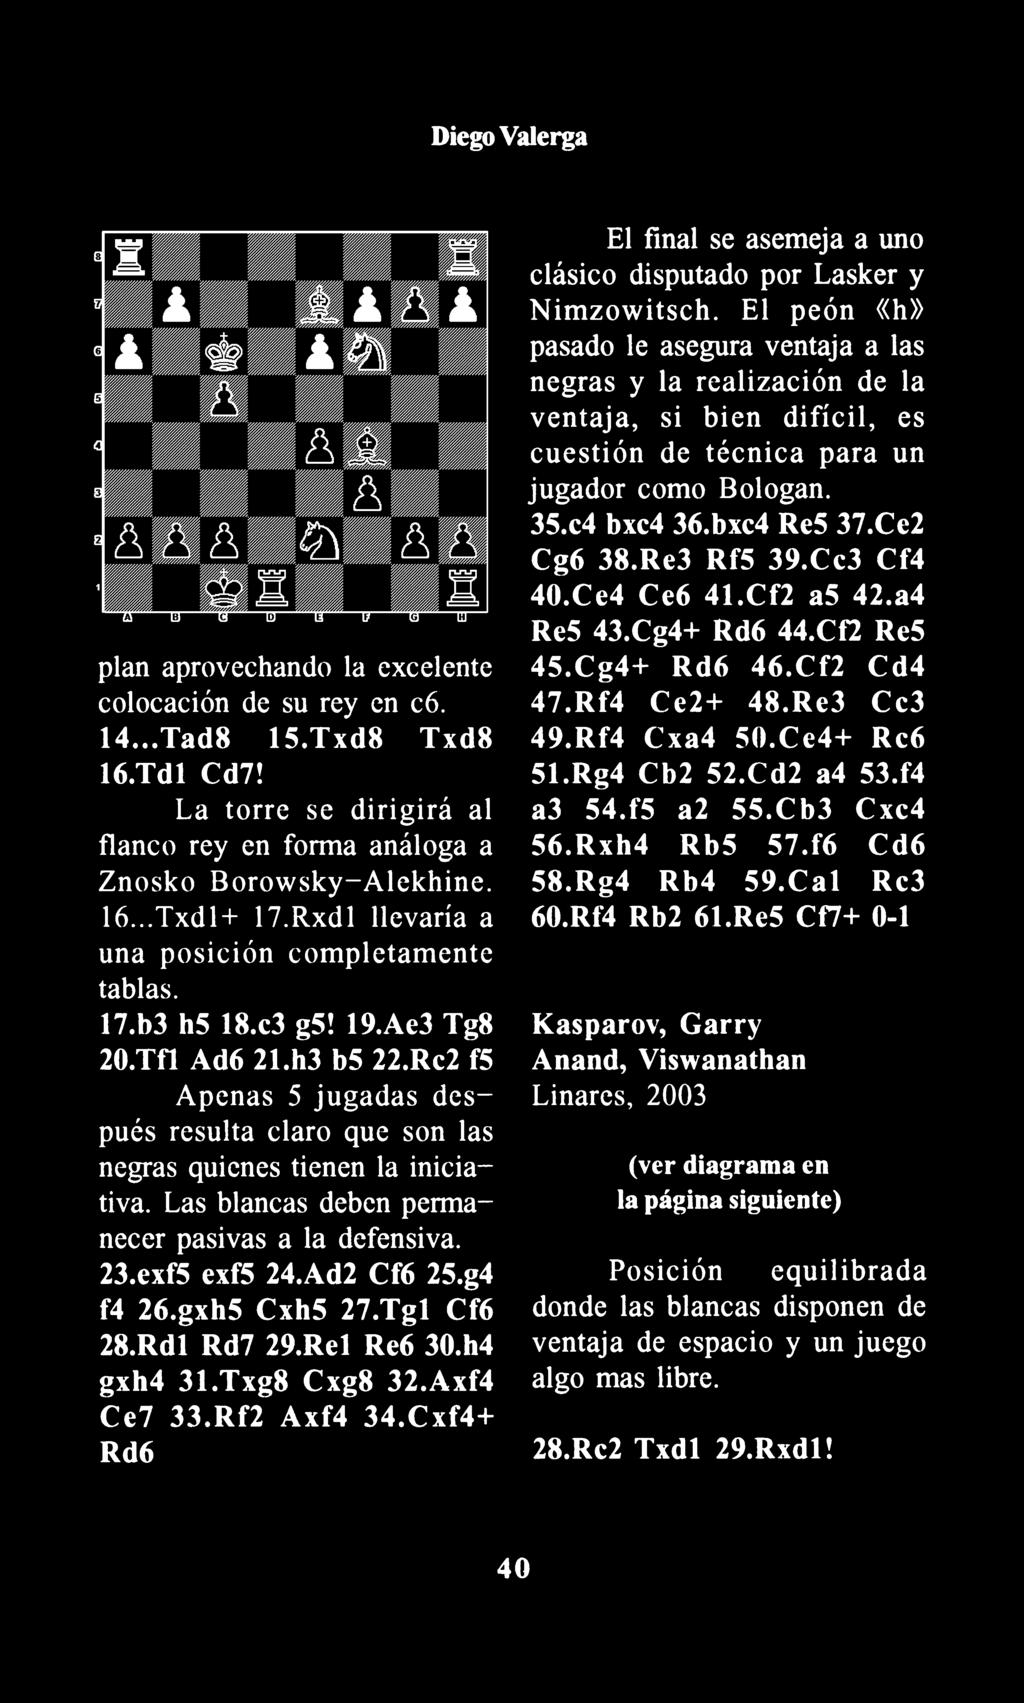 Diego Valerga plan aprovechando la excelente colocación de su rey en c6. 14... Tad8 1S.Txd8 Txd8 16.Tdl Cd7! La torre se dirigirá al flanco rey en forma análoga a Znosko Borowsky-Alekhine. l6.